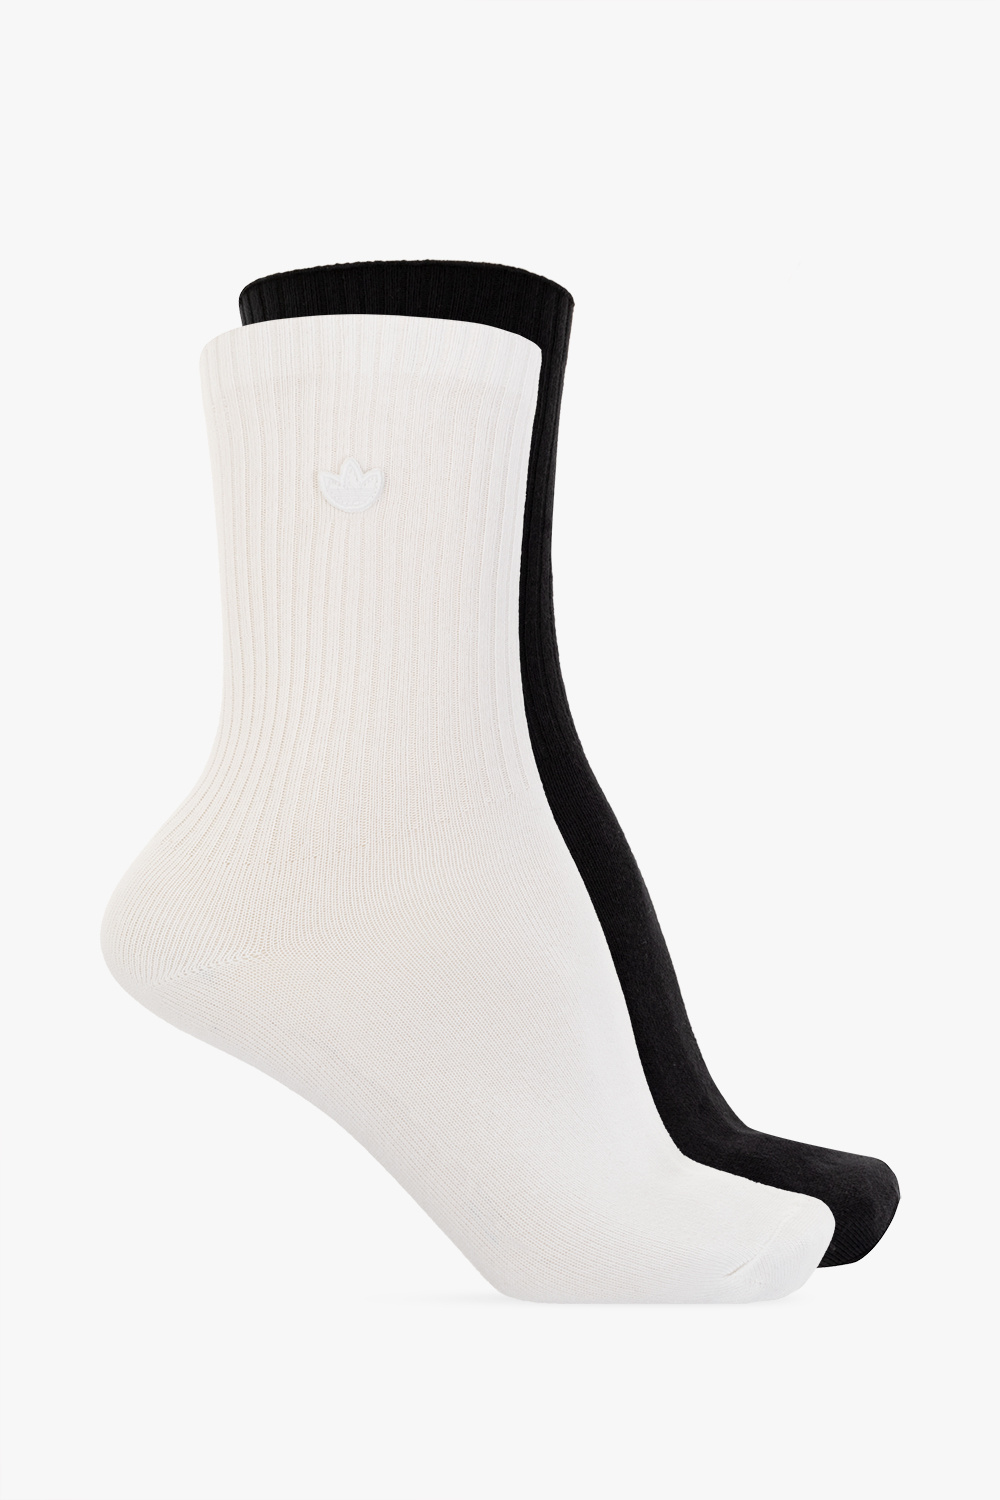 ADIDAS Originals Branded socks 2-pack | Men's Clothing | Vitkac